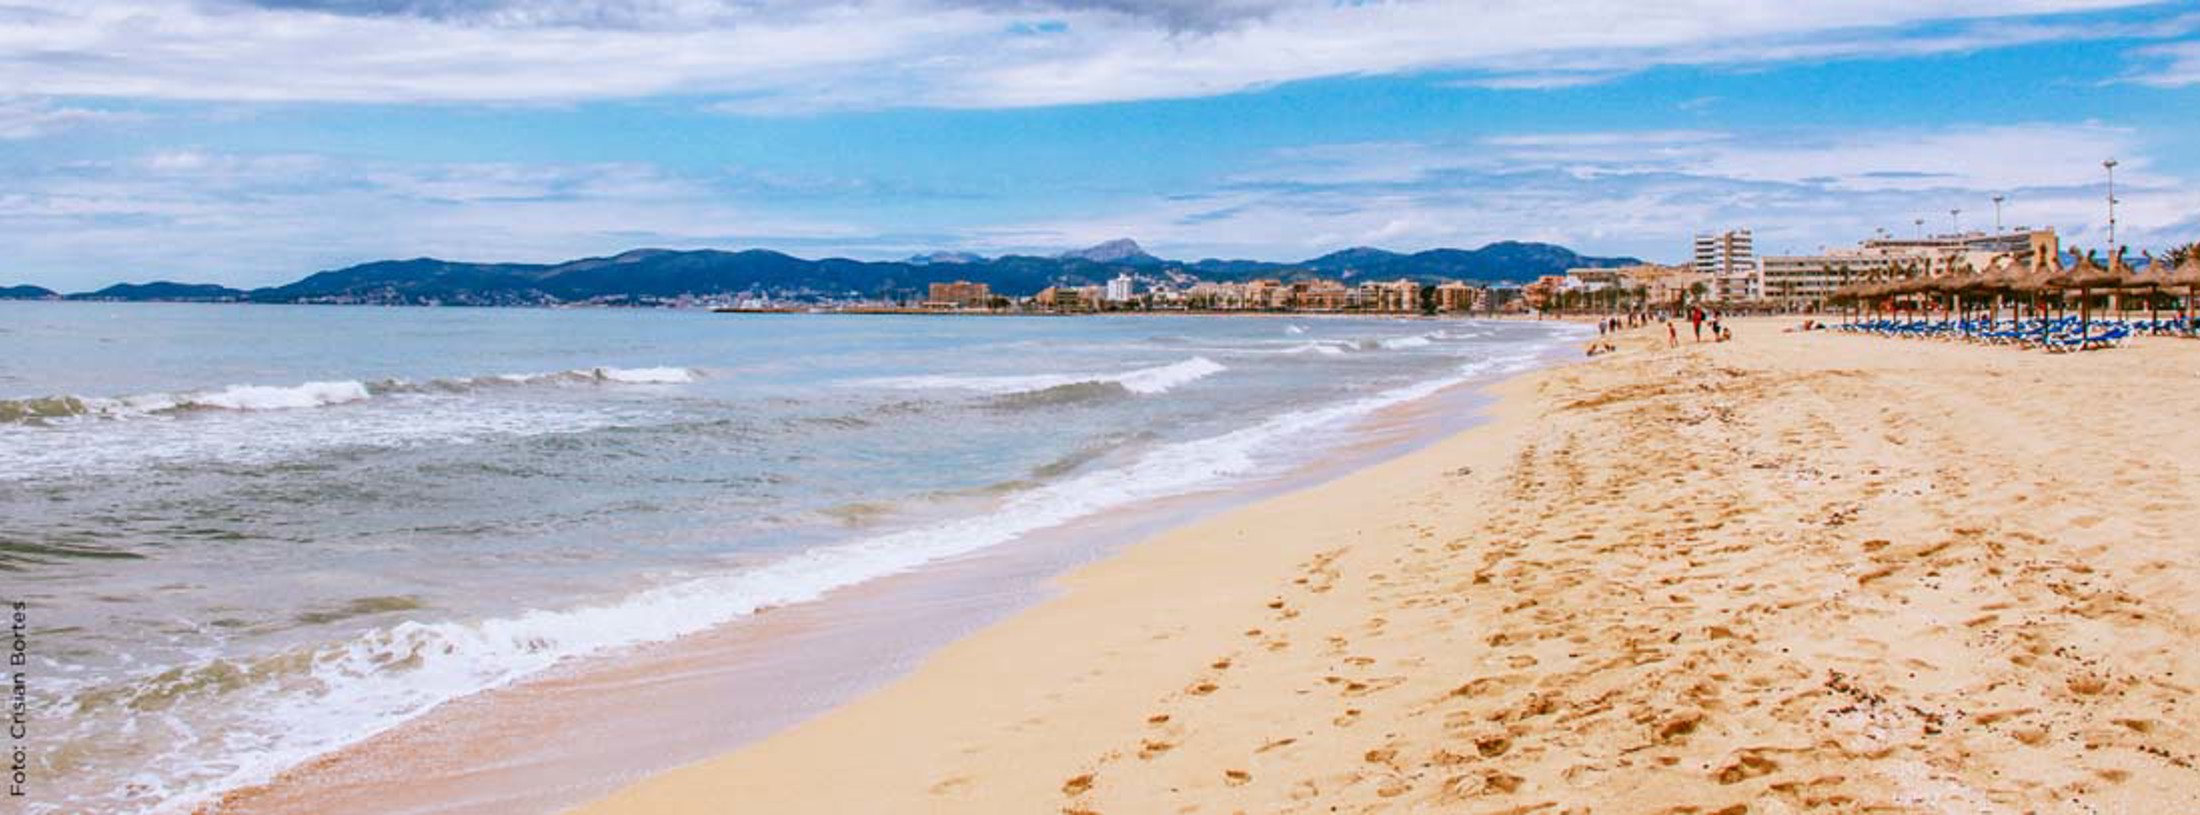 Playa de Palma – Arenal – Can Pastilla